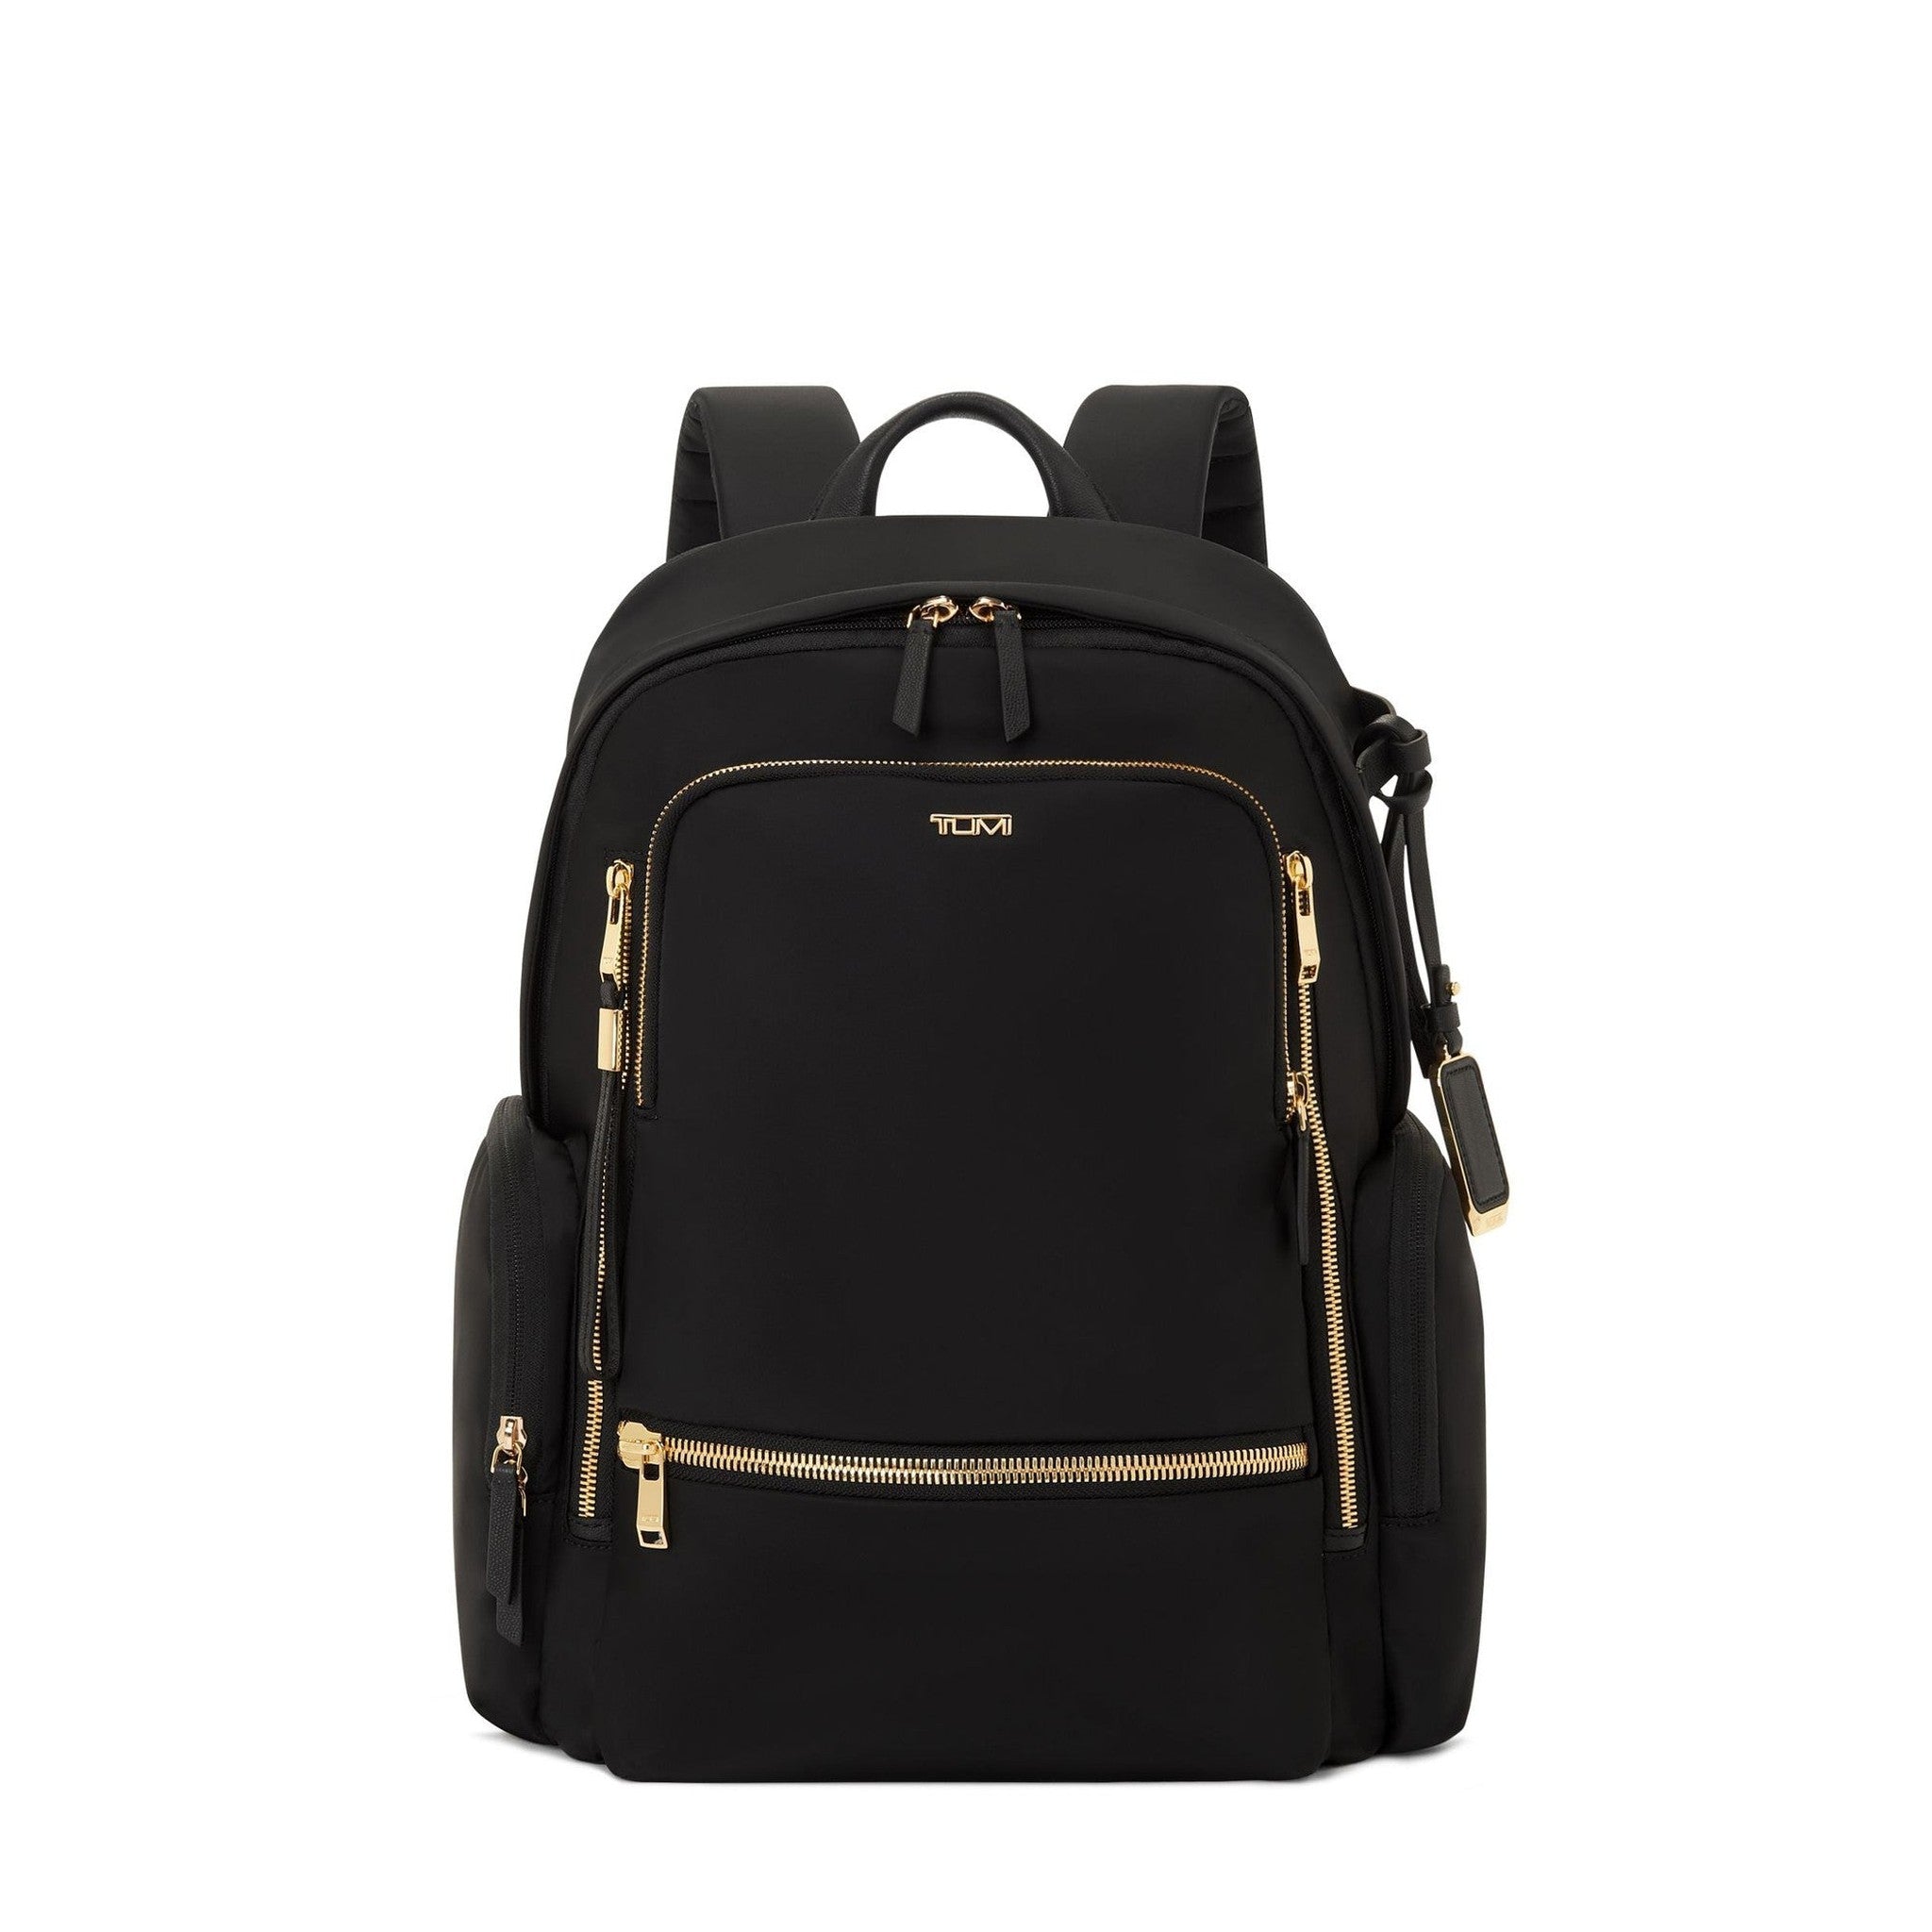 TUMI Voyageur Celina Backpack – Luggage Pros